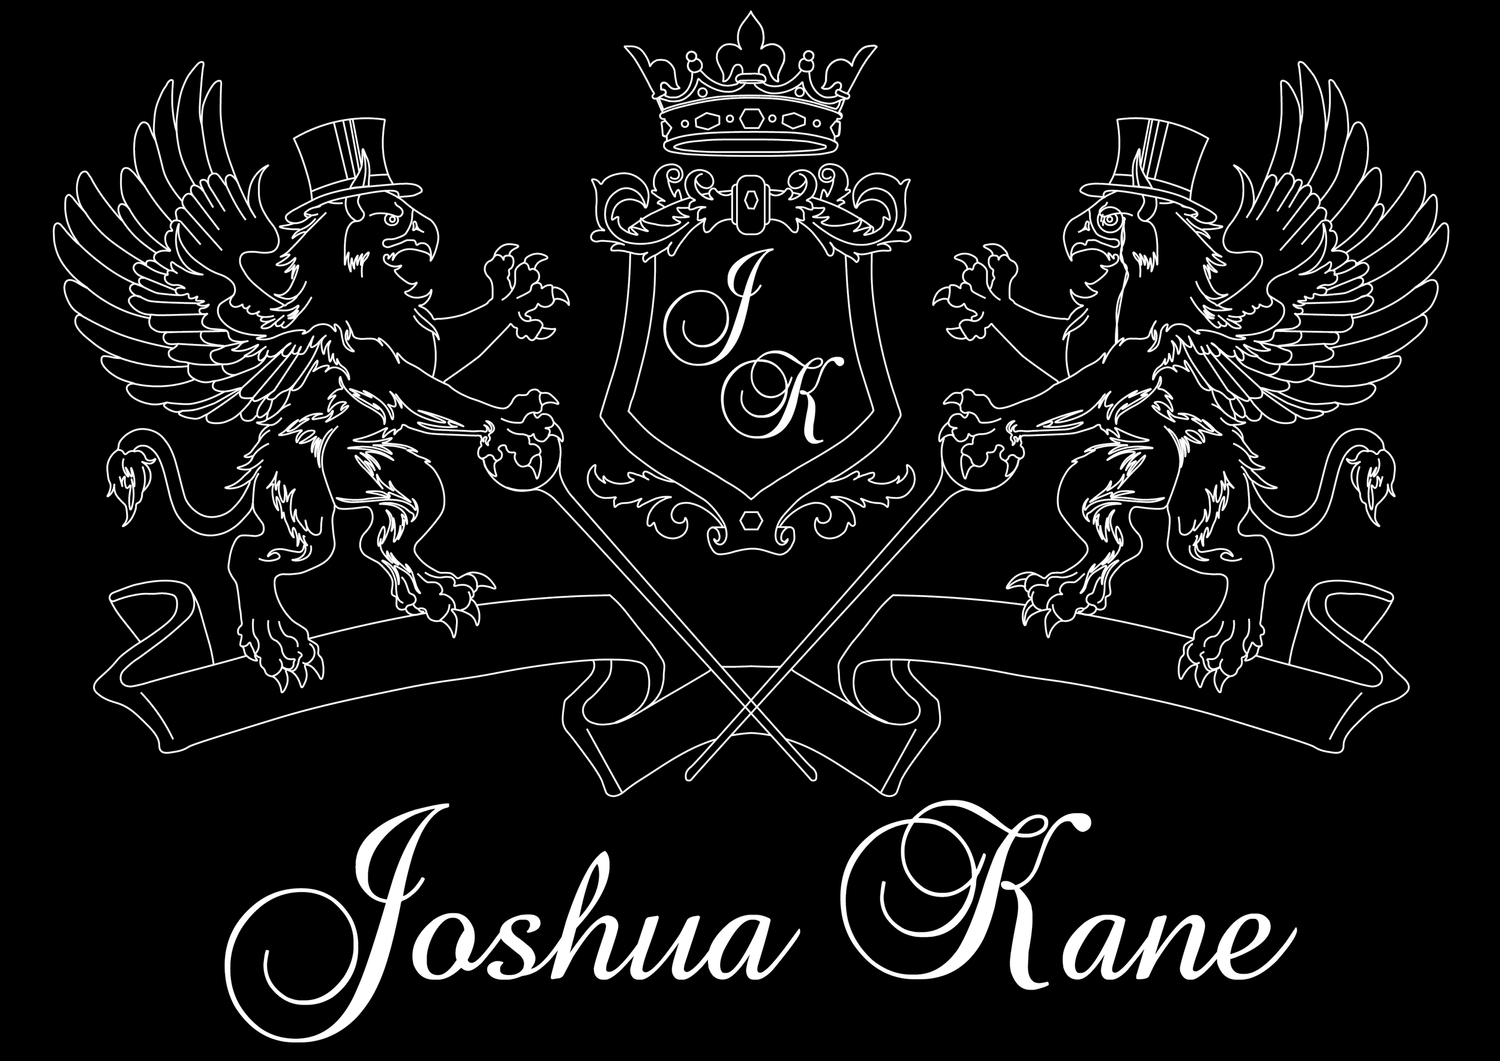 Joshua Kane